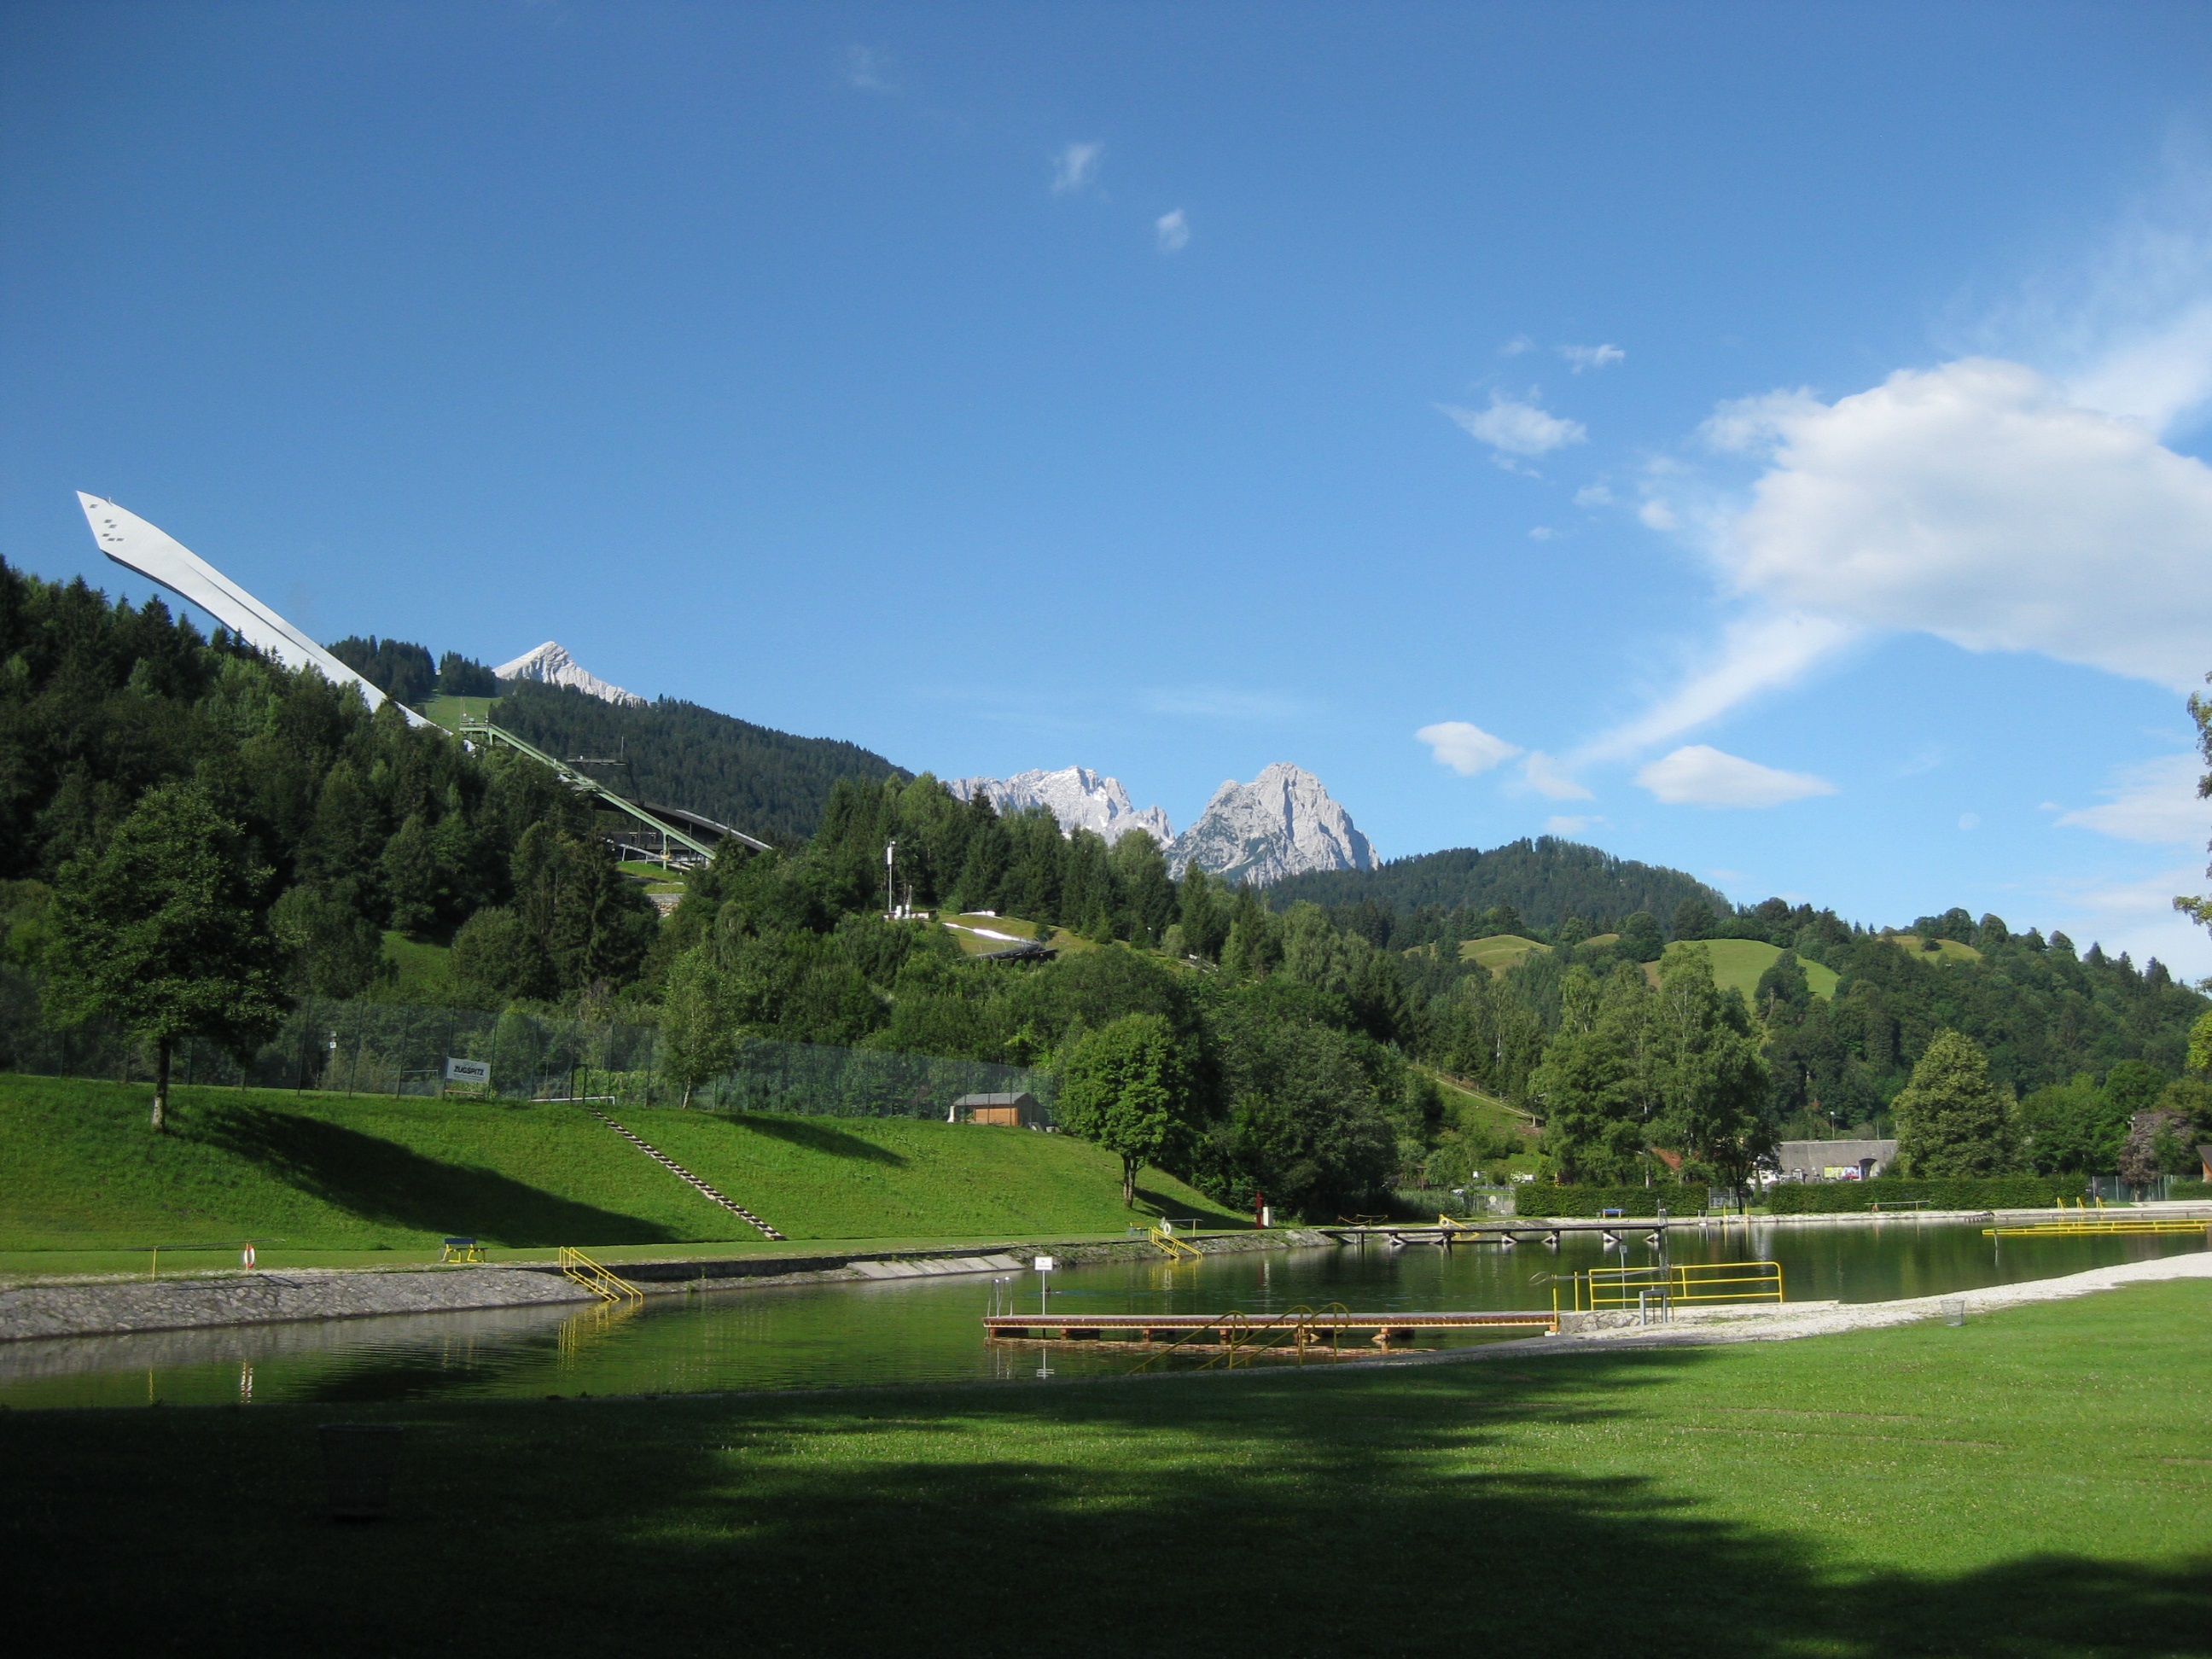 Naturfreibad Kainzenbad in Garmisch-Partenkirchen.
